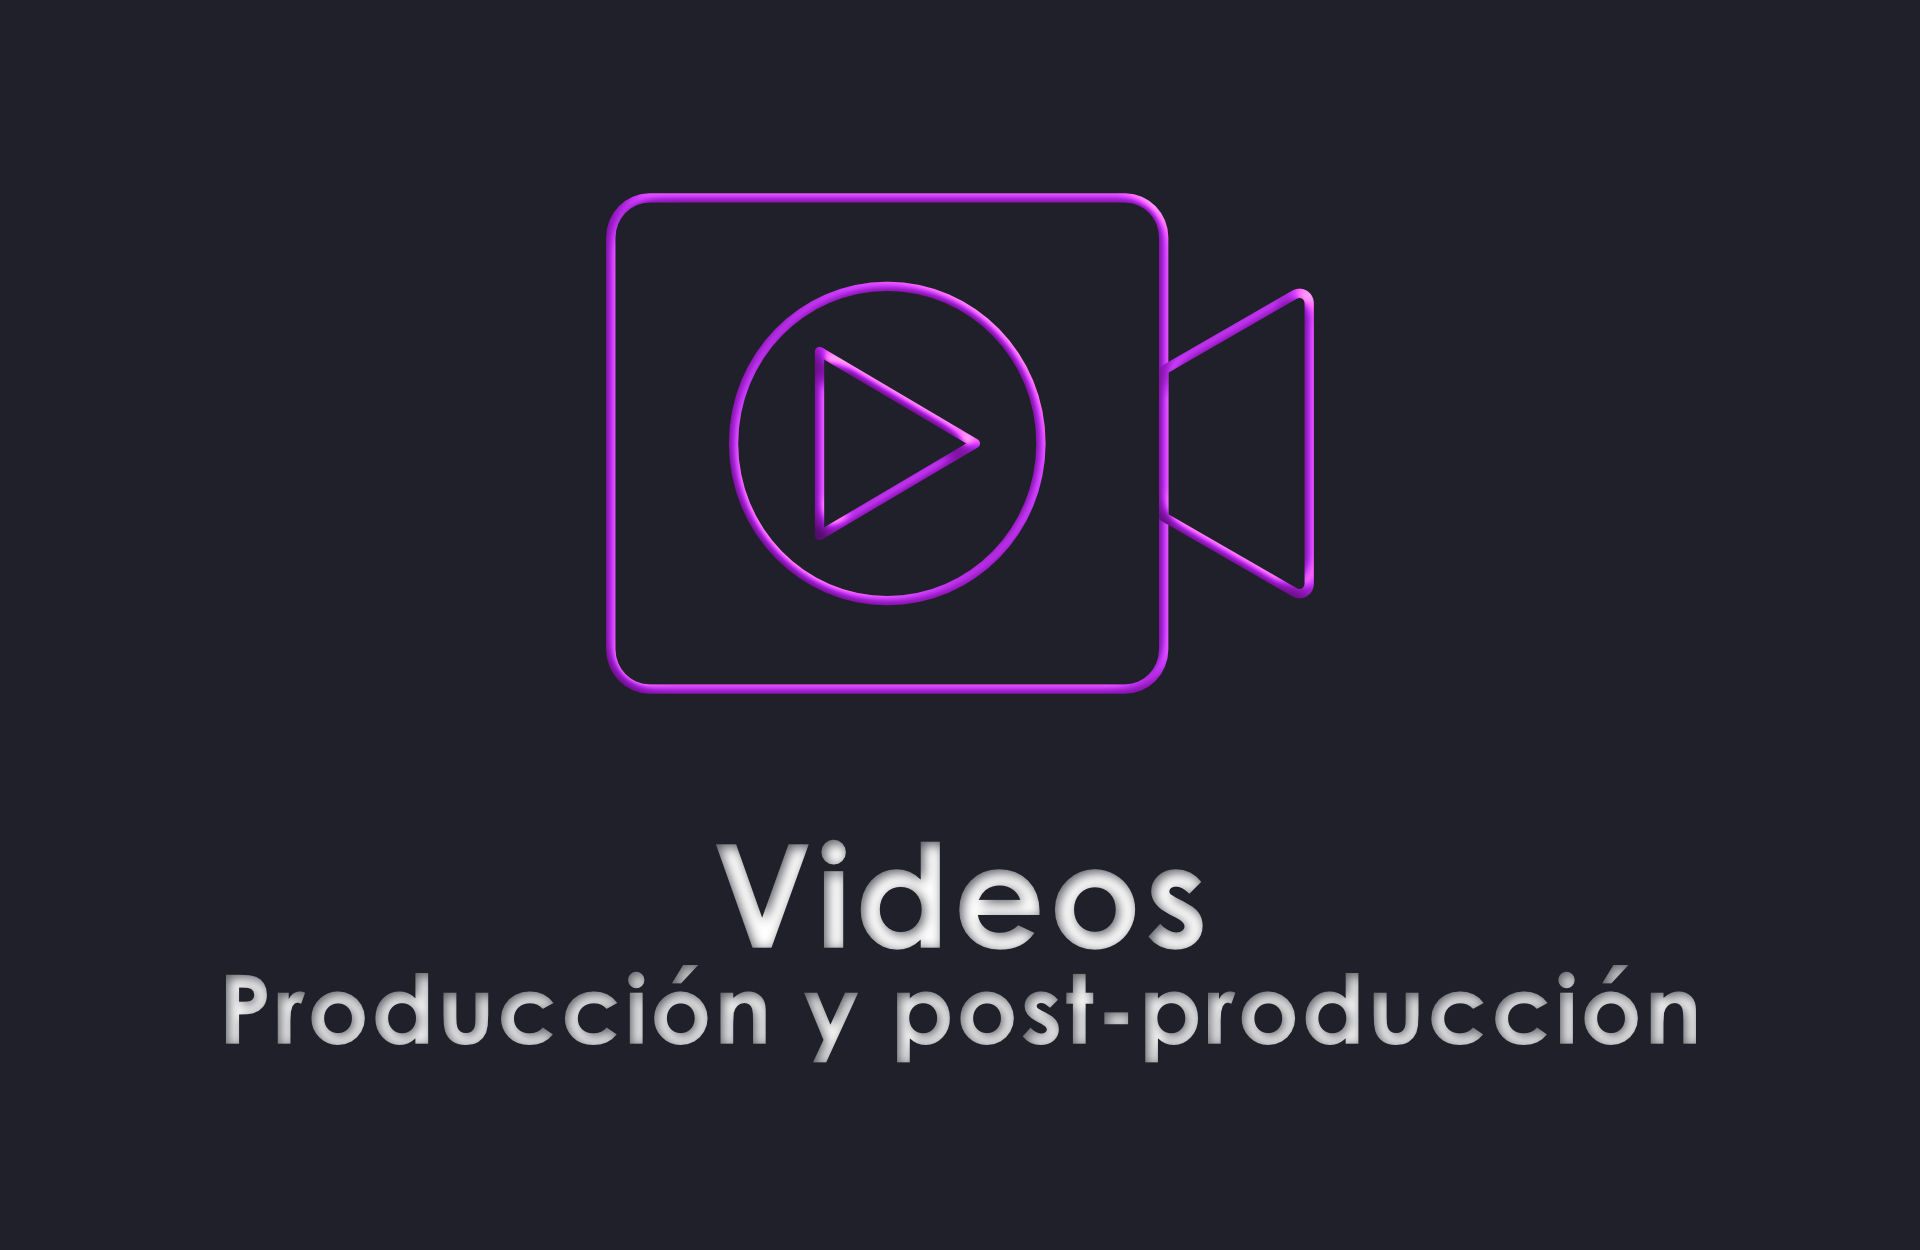 Videos (Producción y post-producción)